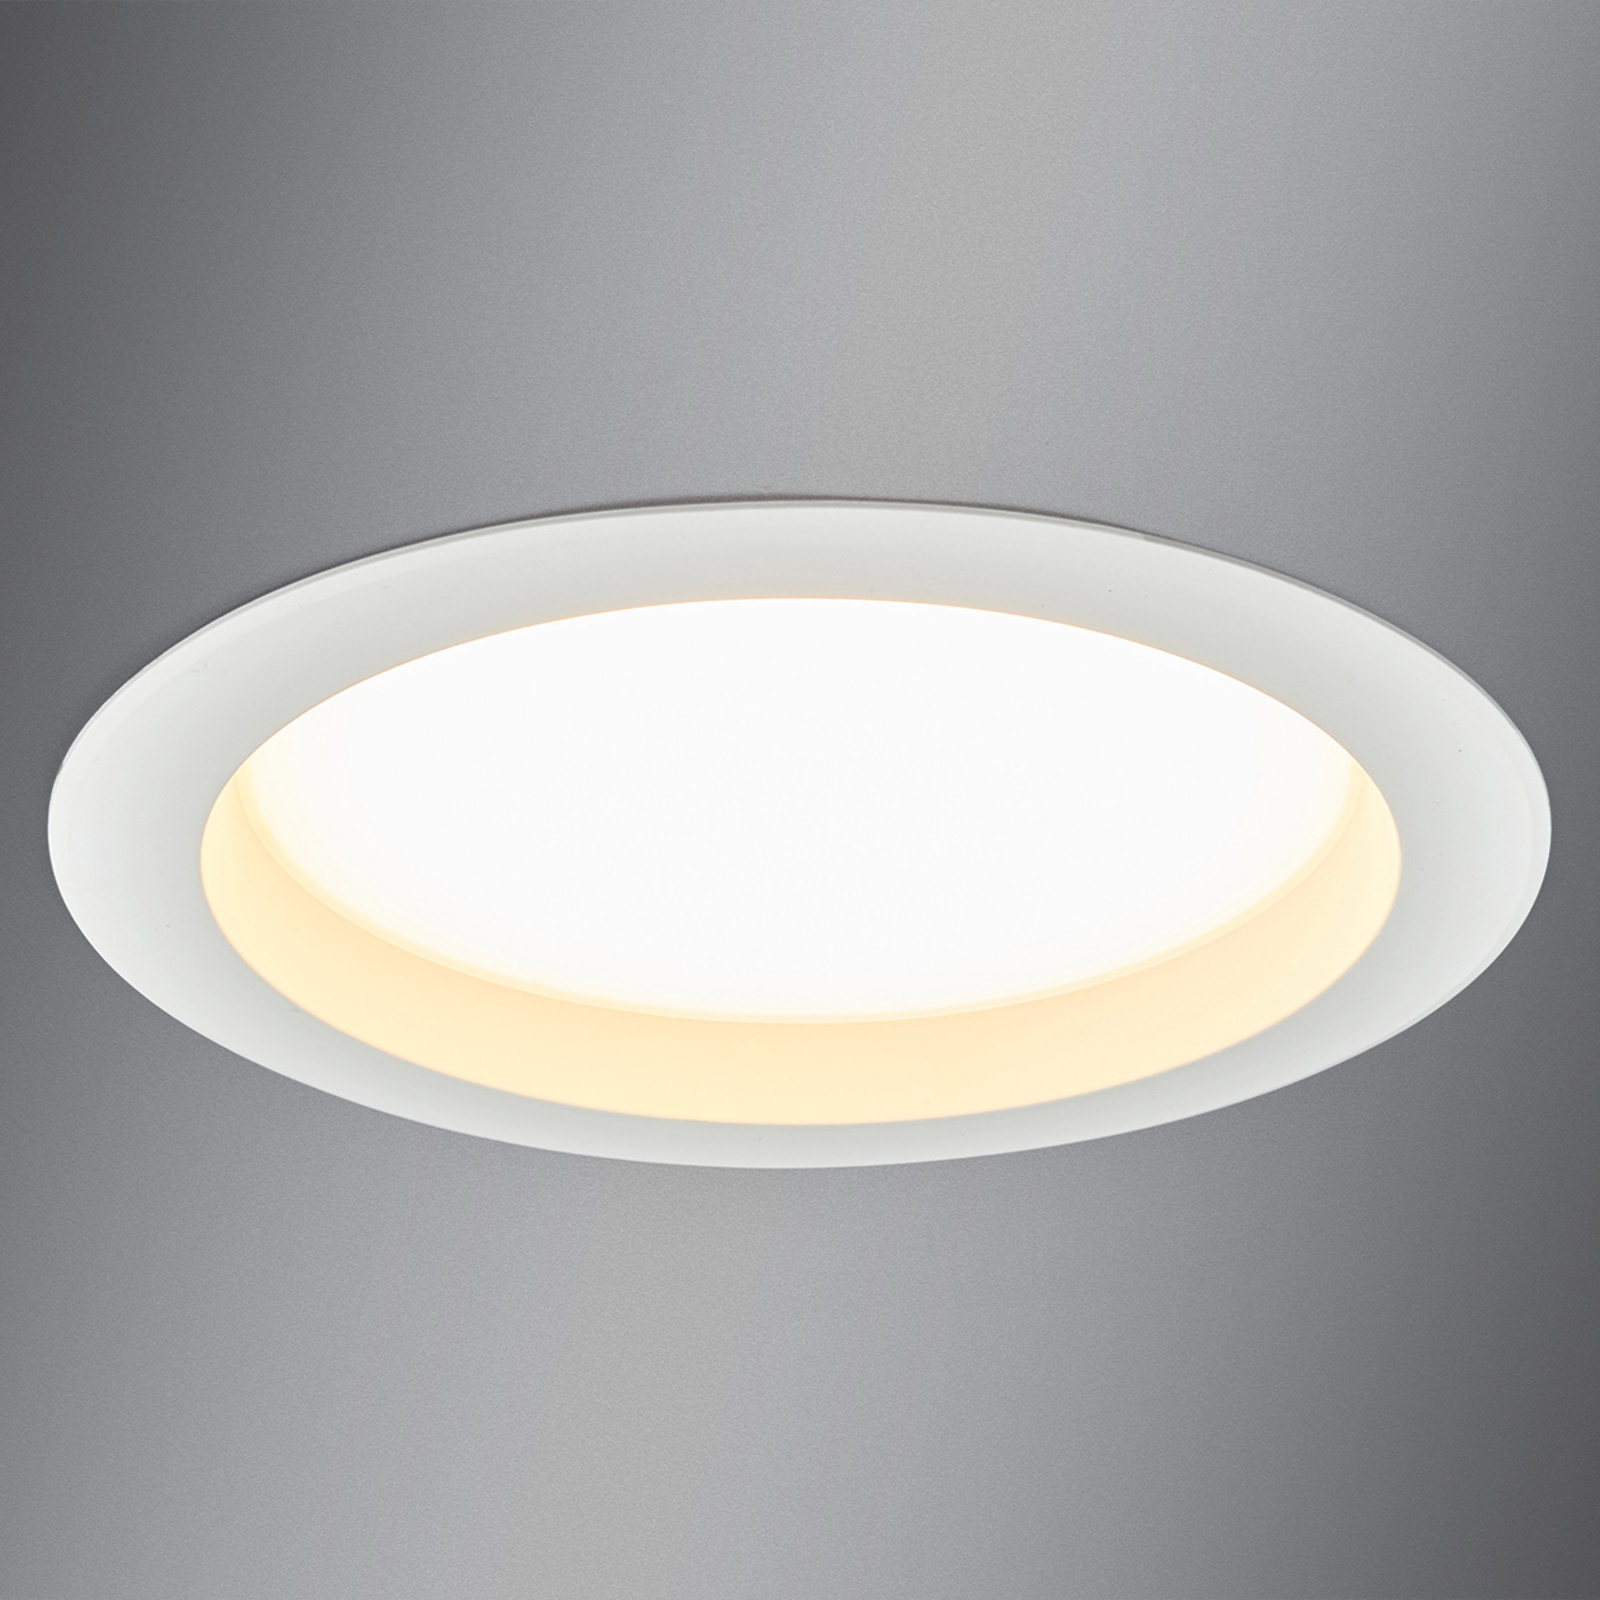 Stort innfelt LED-spotlys Arian, 24,4 cm